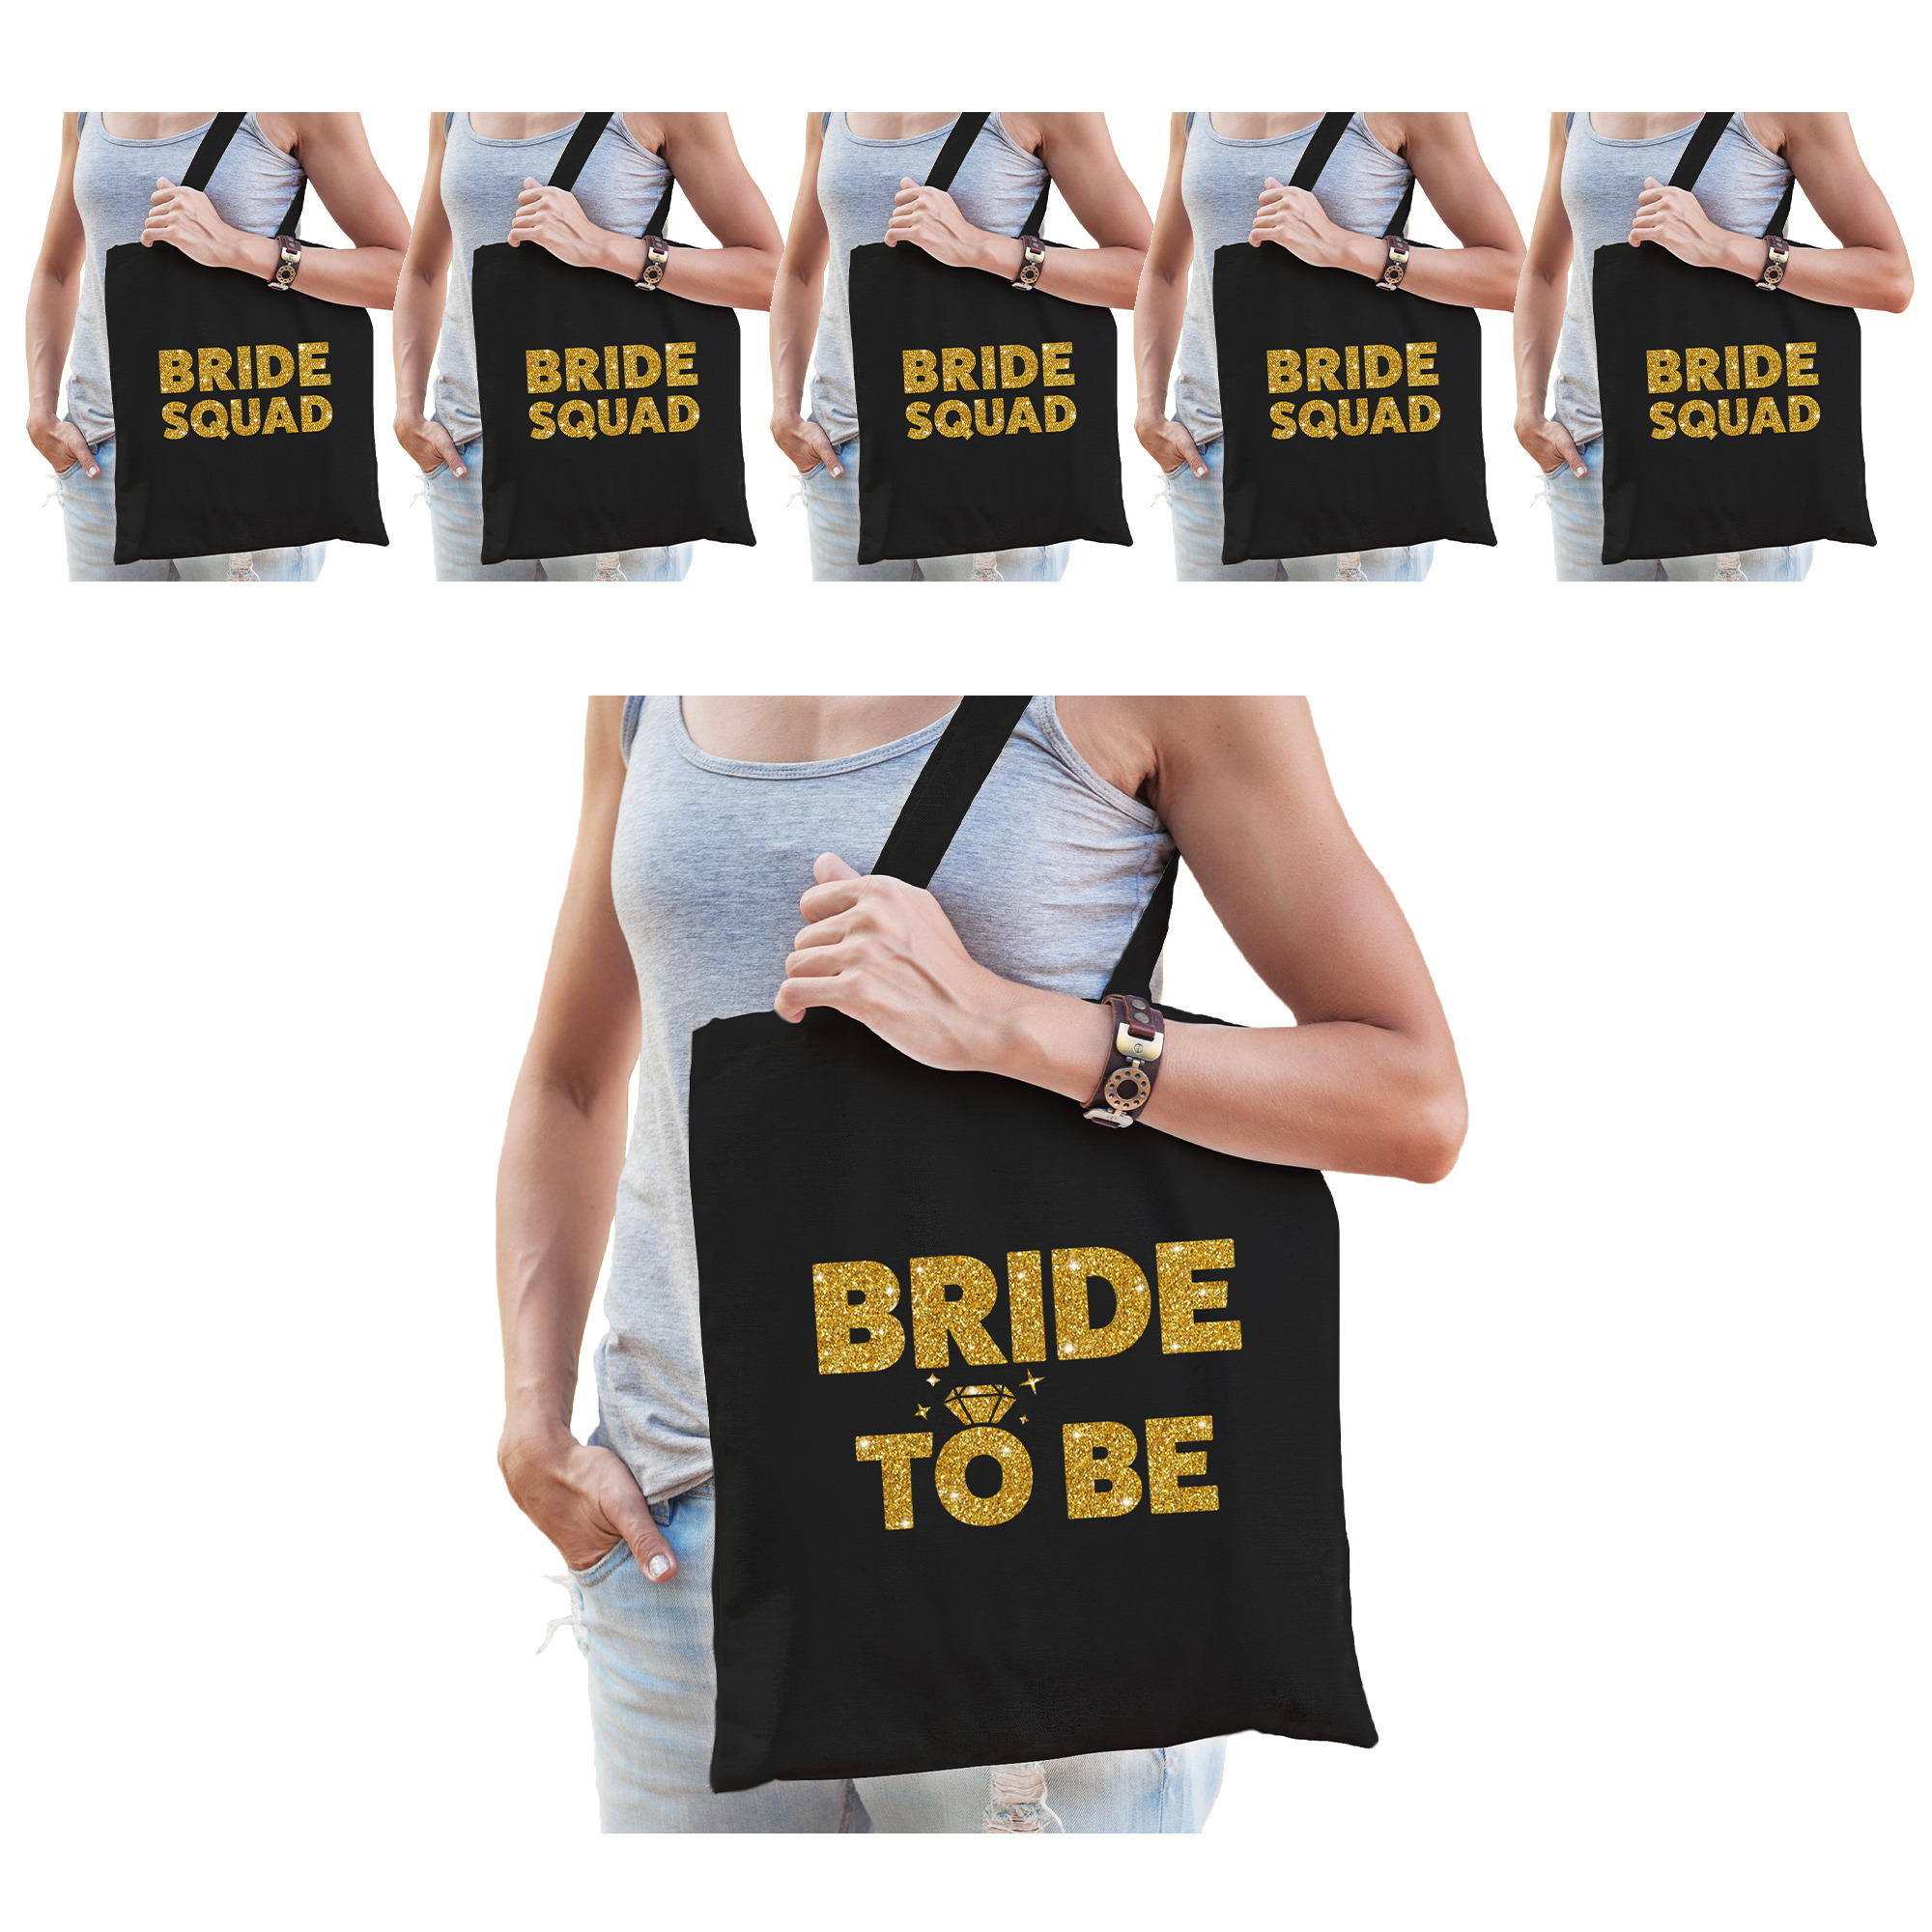 Pakket Vrijgezellenfeest dames tasjes- goodiebag: 1x Bride to Be zwart goud+ 5x Bride Squad zwart go